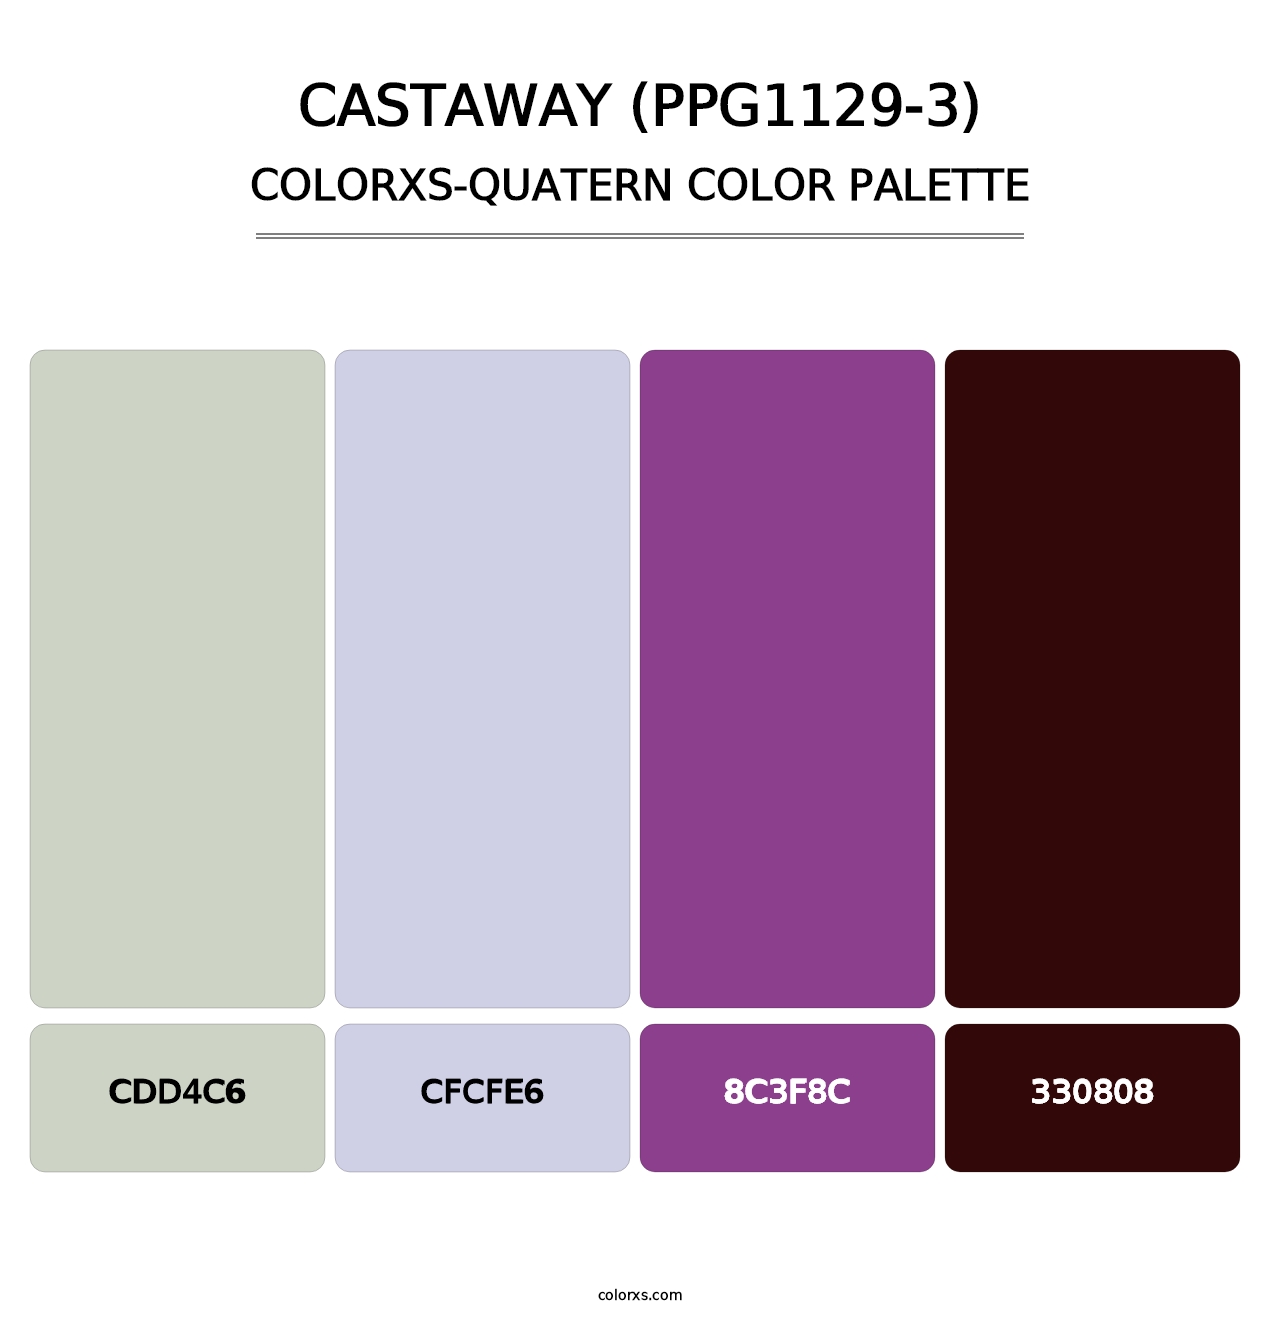 Castaway (PPG1129-3) - Colorxs Quatern Palette